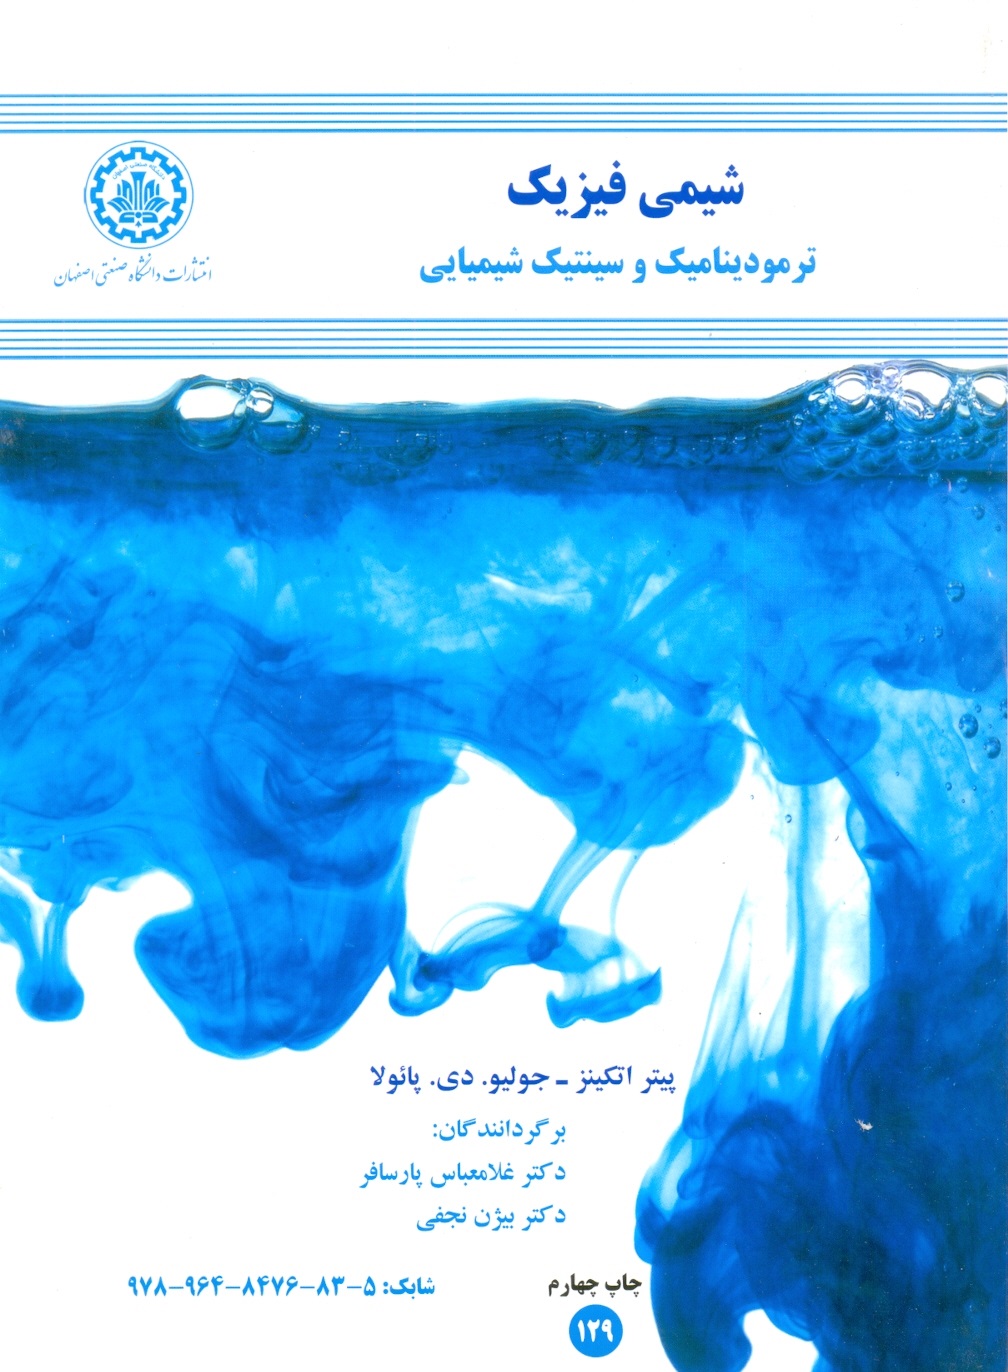 شیمی فیزیک(ترمودینامیک وسینتیک شیمیایی)اتکینز-پارسافر-نجفی/دا صنعتی اصفهان